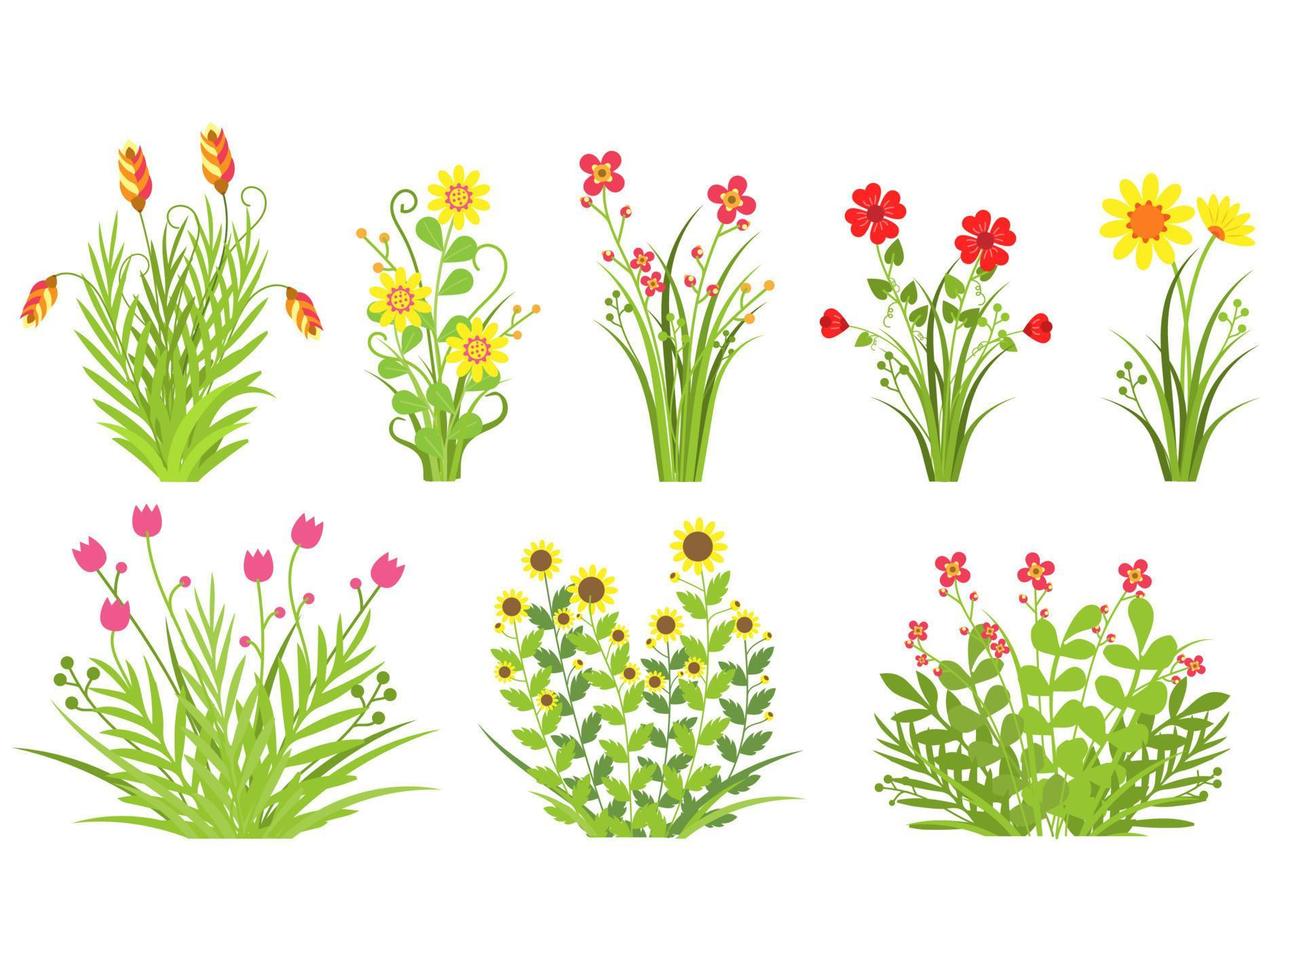 kleur bloemen, bloemen en gras bladeren lente concept plat ontwerp stijl .vector illustratie vector